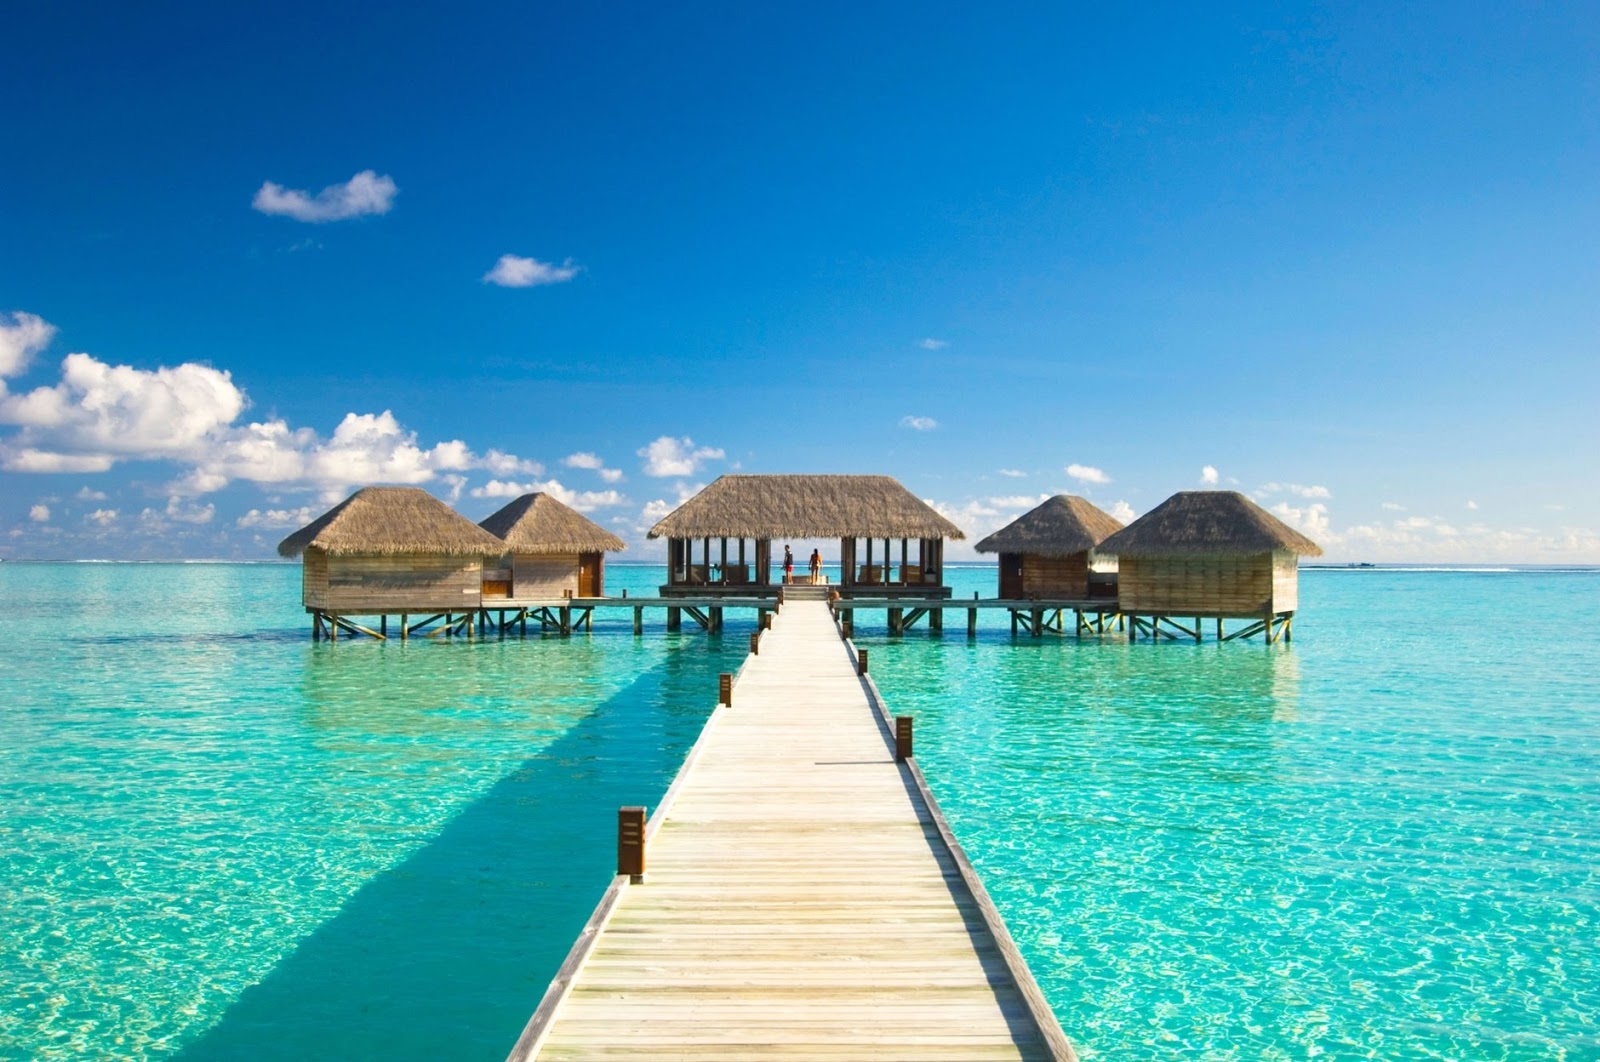 maldives wallpaper,resort,pier,sky,natural landscape,vacation